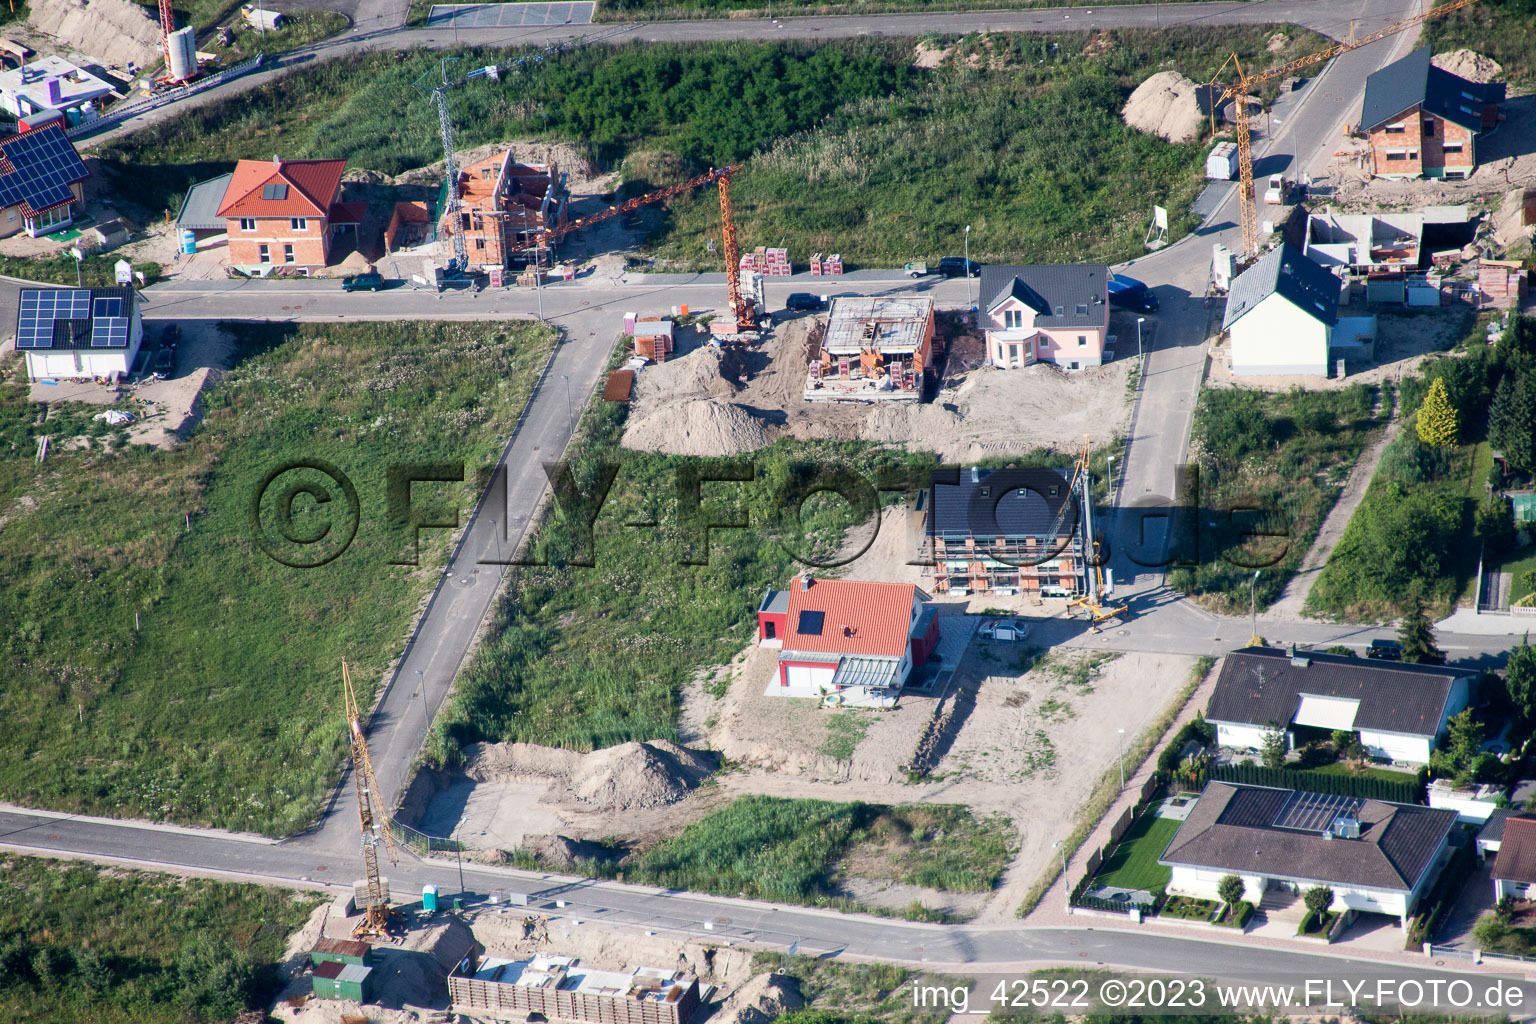 Nouvelle zone de développement ouest à Jockgrim dans le département Rhénanie-Palatinat, Allemagne du point de vue du drone